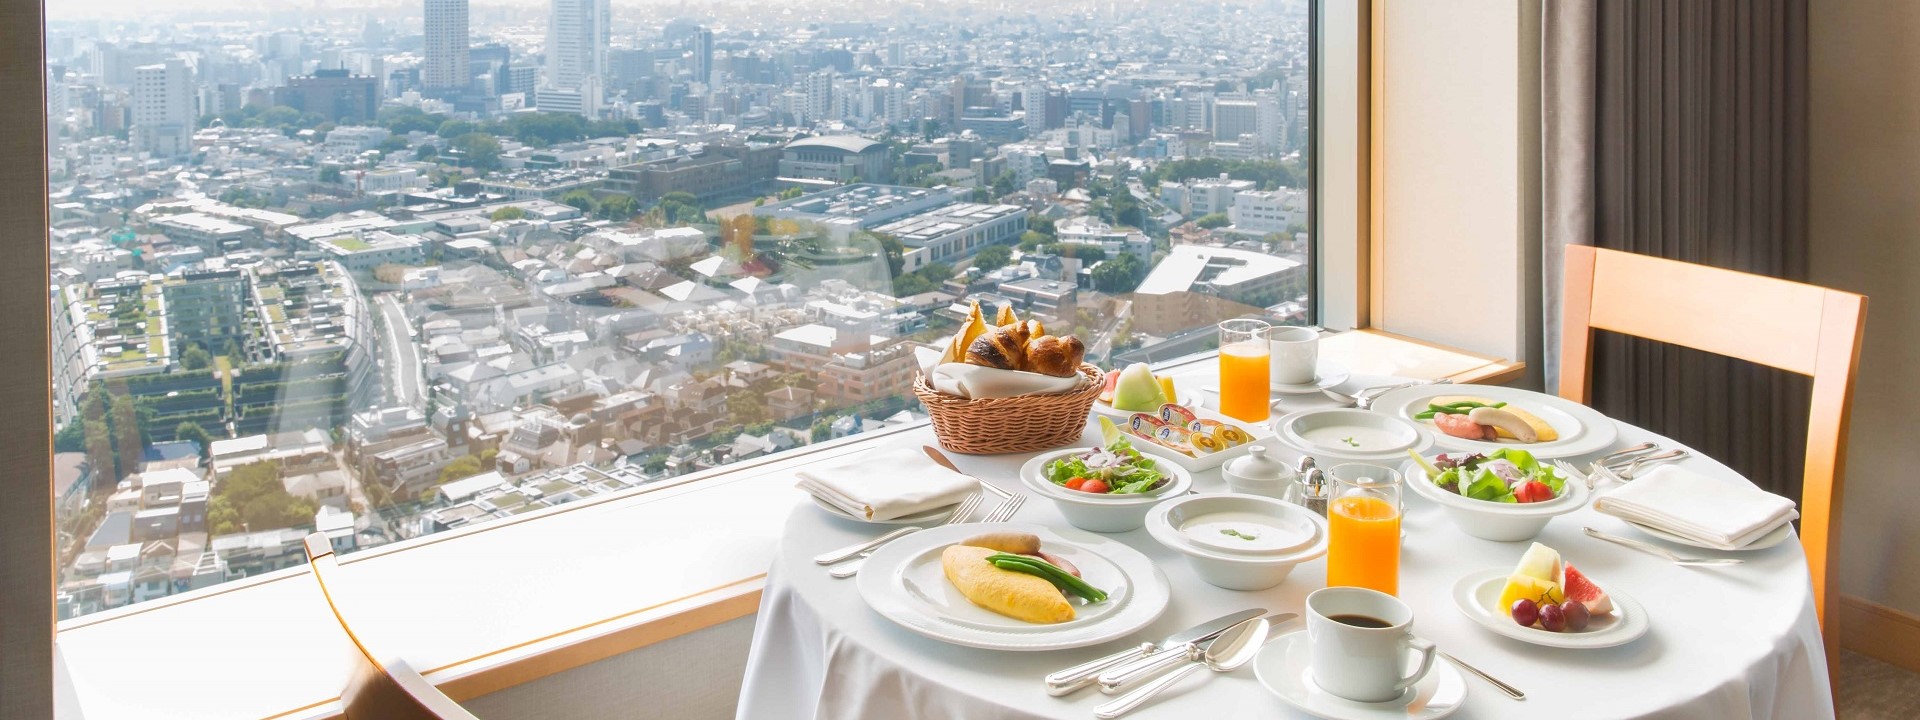 ルームサービス 朝食のご案内 渋谷駅すぐ セルリアンタワー 東急ホテル 公式